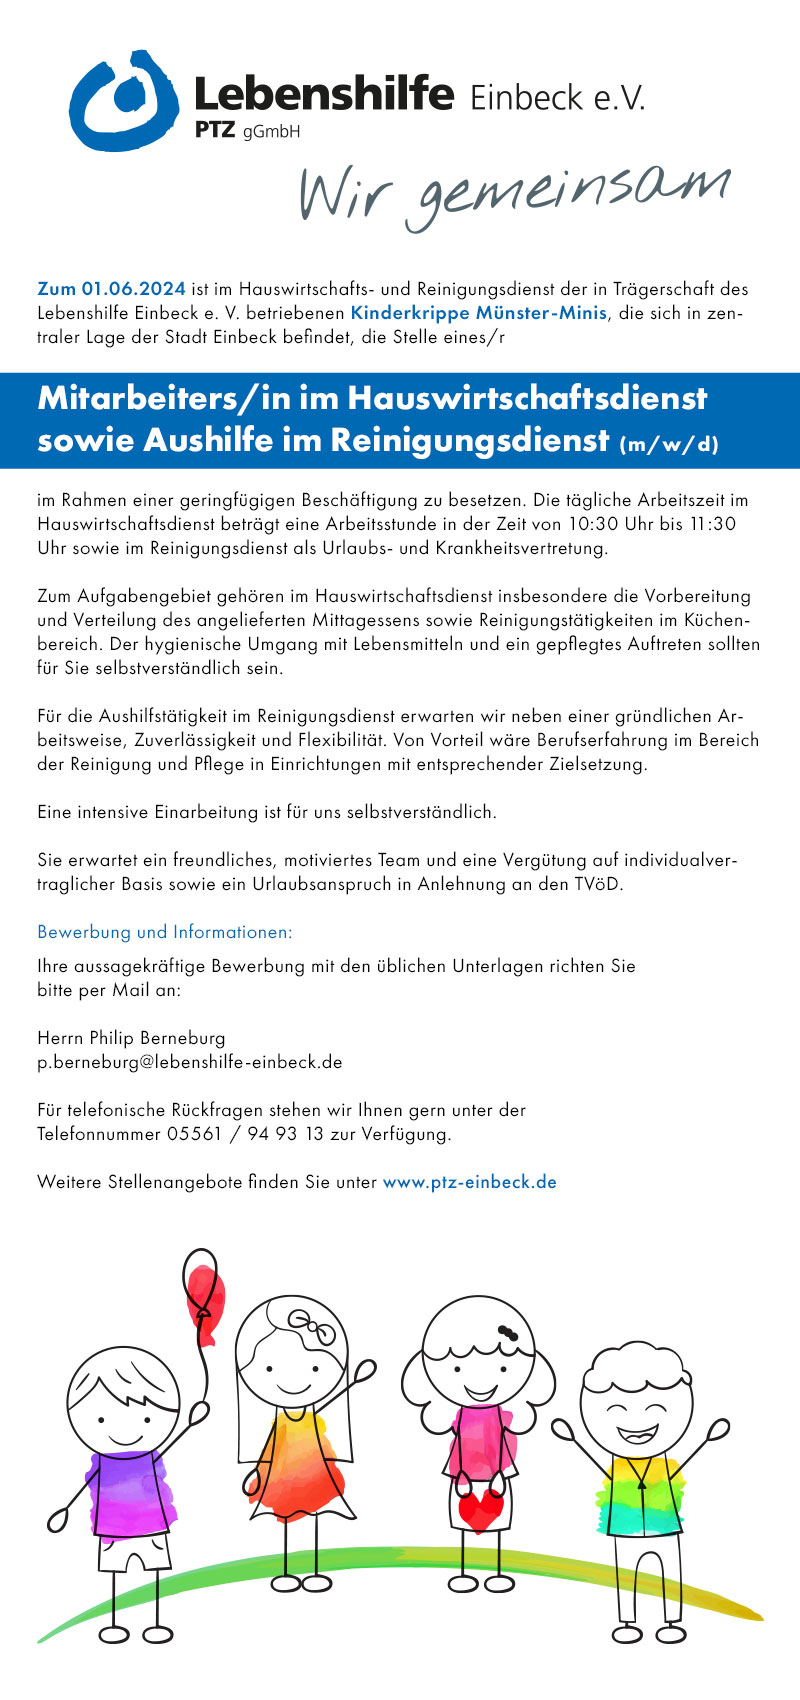  Mitarbeiter/in im Hauswirtschaftsdienst sowie Aushilfe im Reinigungsdienst (m/w/d) - Lebenshilfe Einbeck e.V.